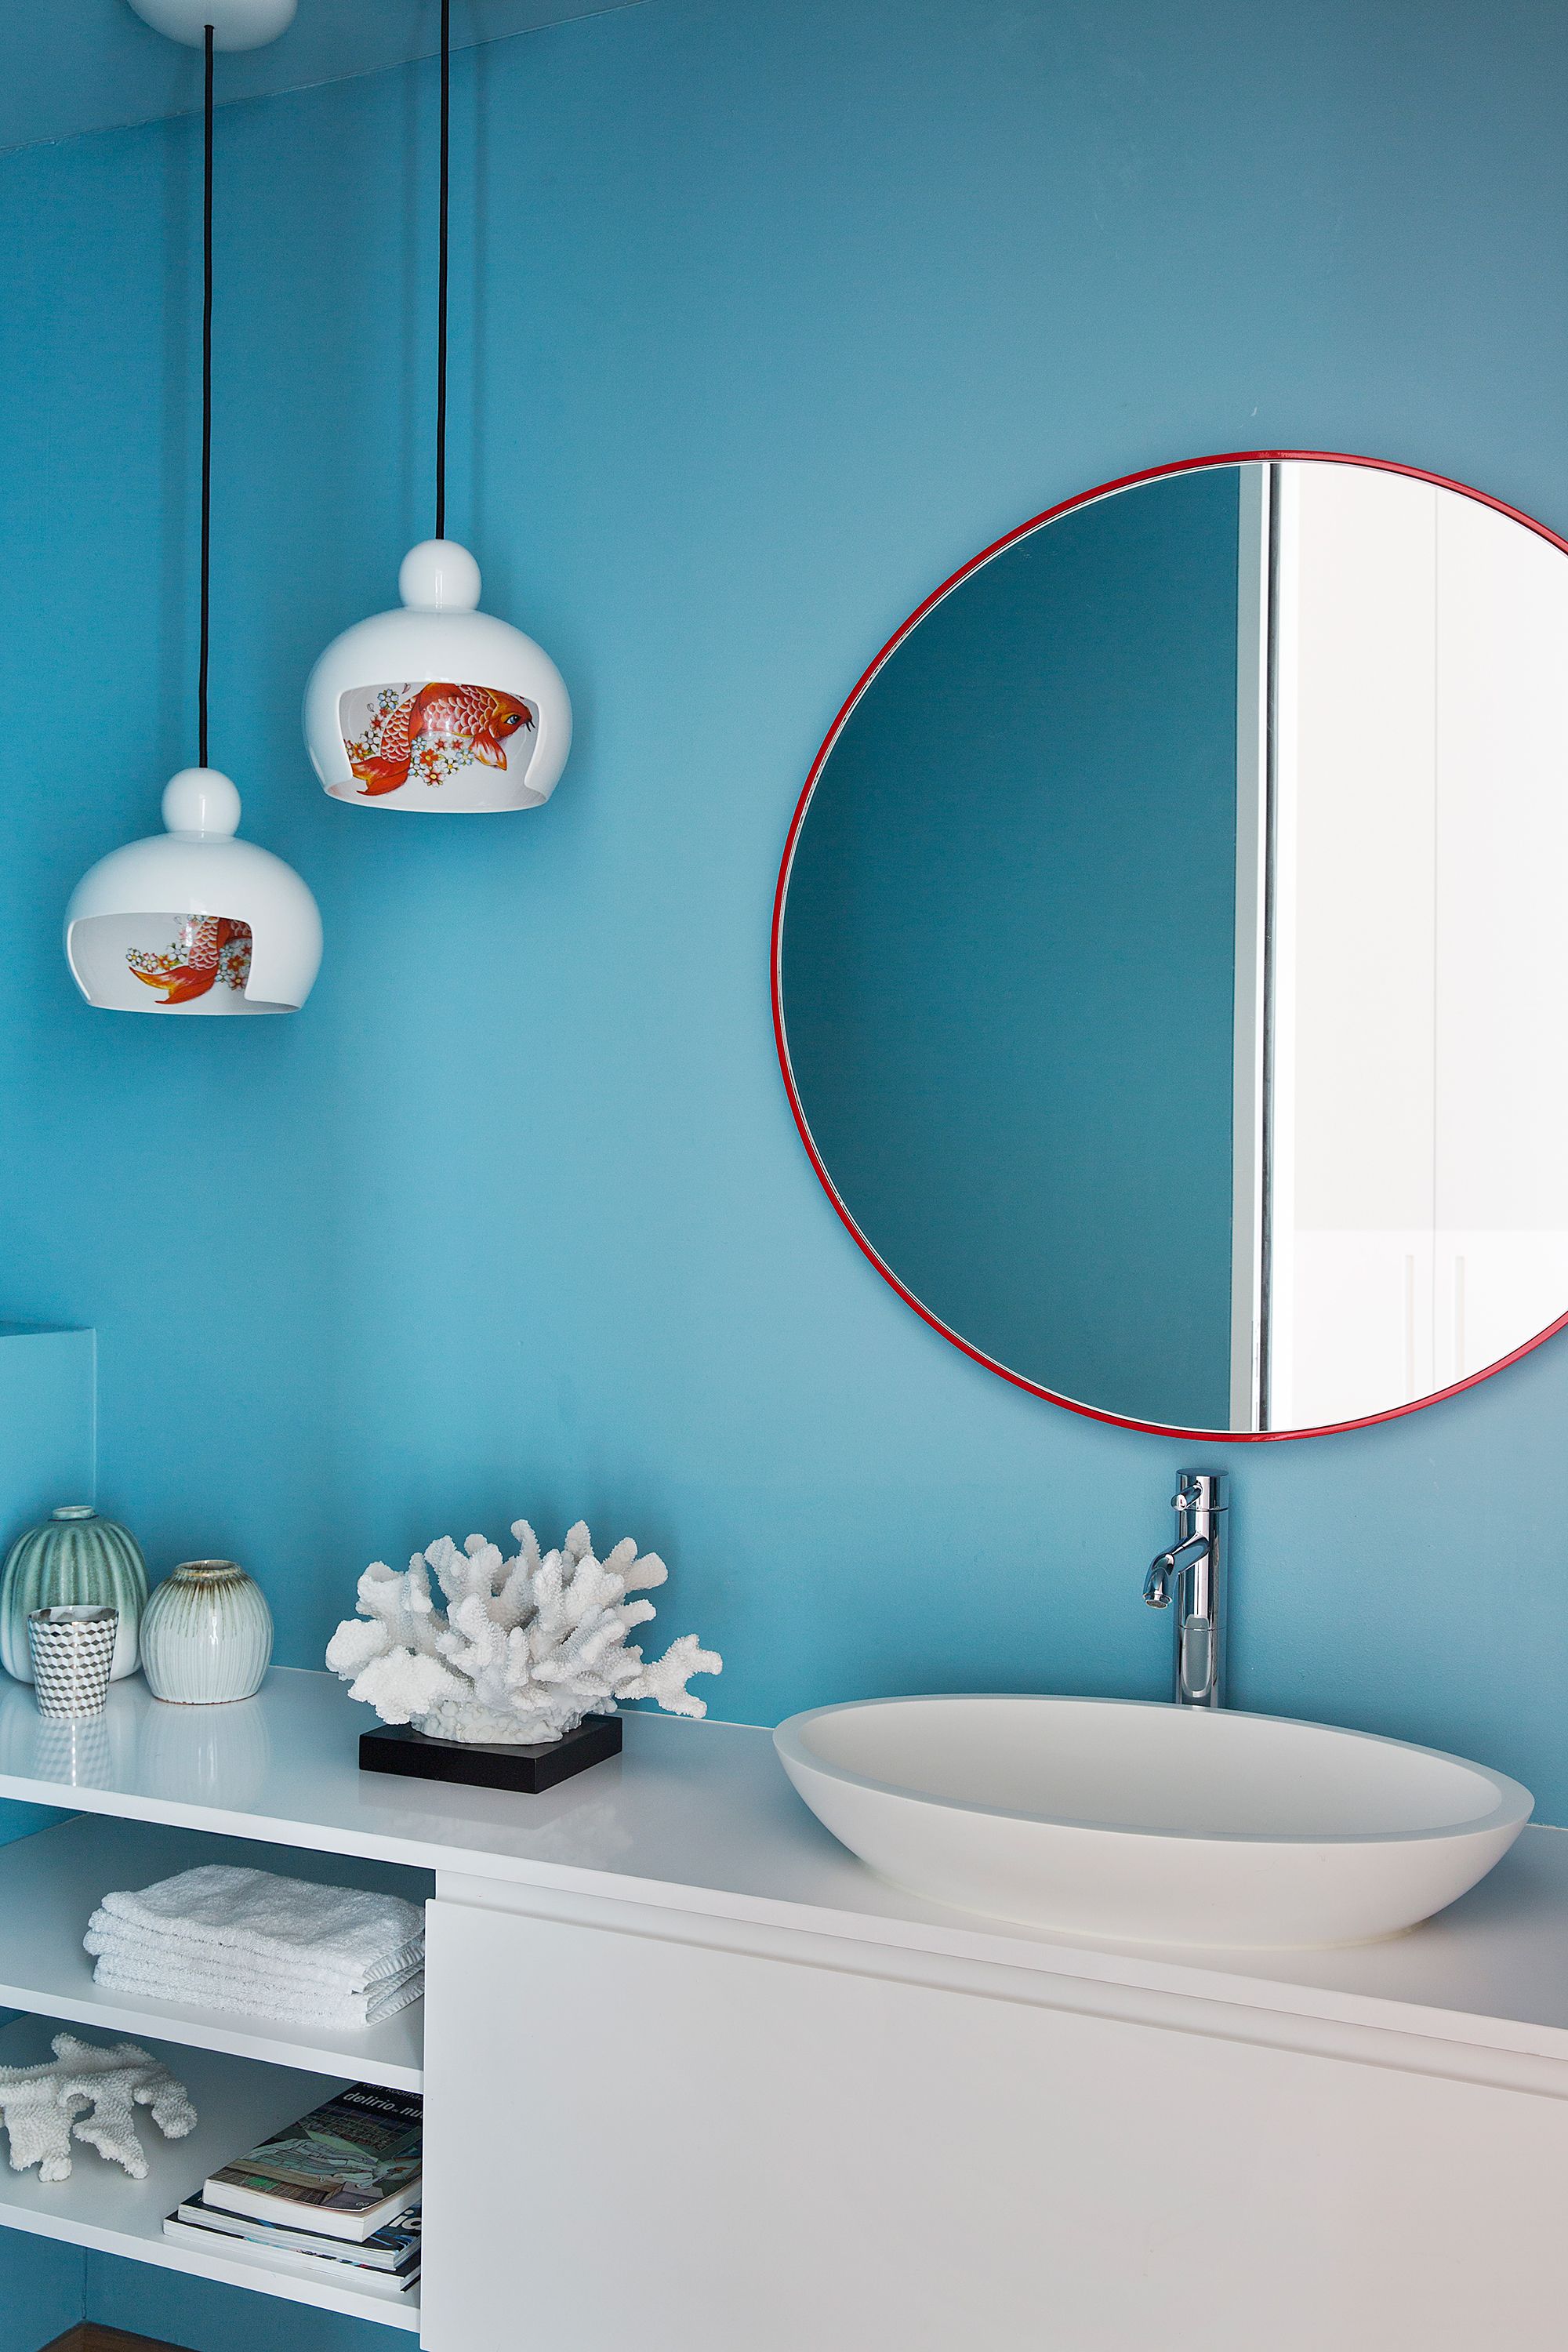 Cómo utilizar espejos en la decoración de tu casa según el Feng Shui